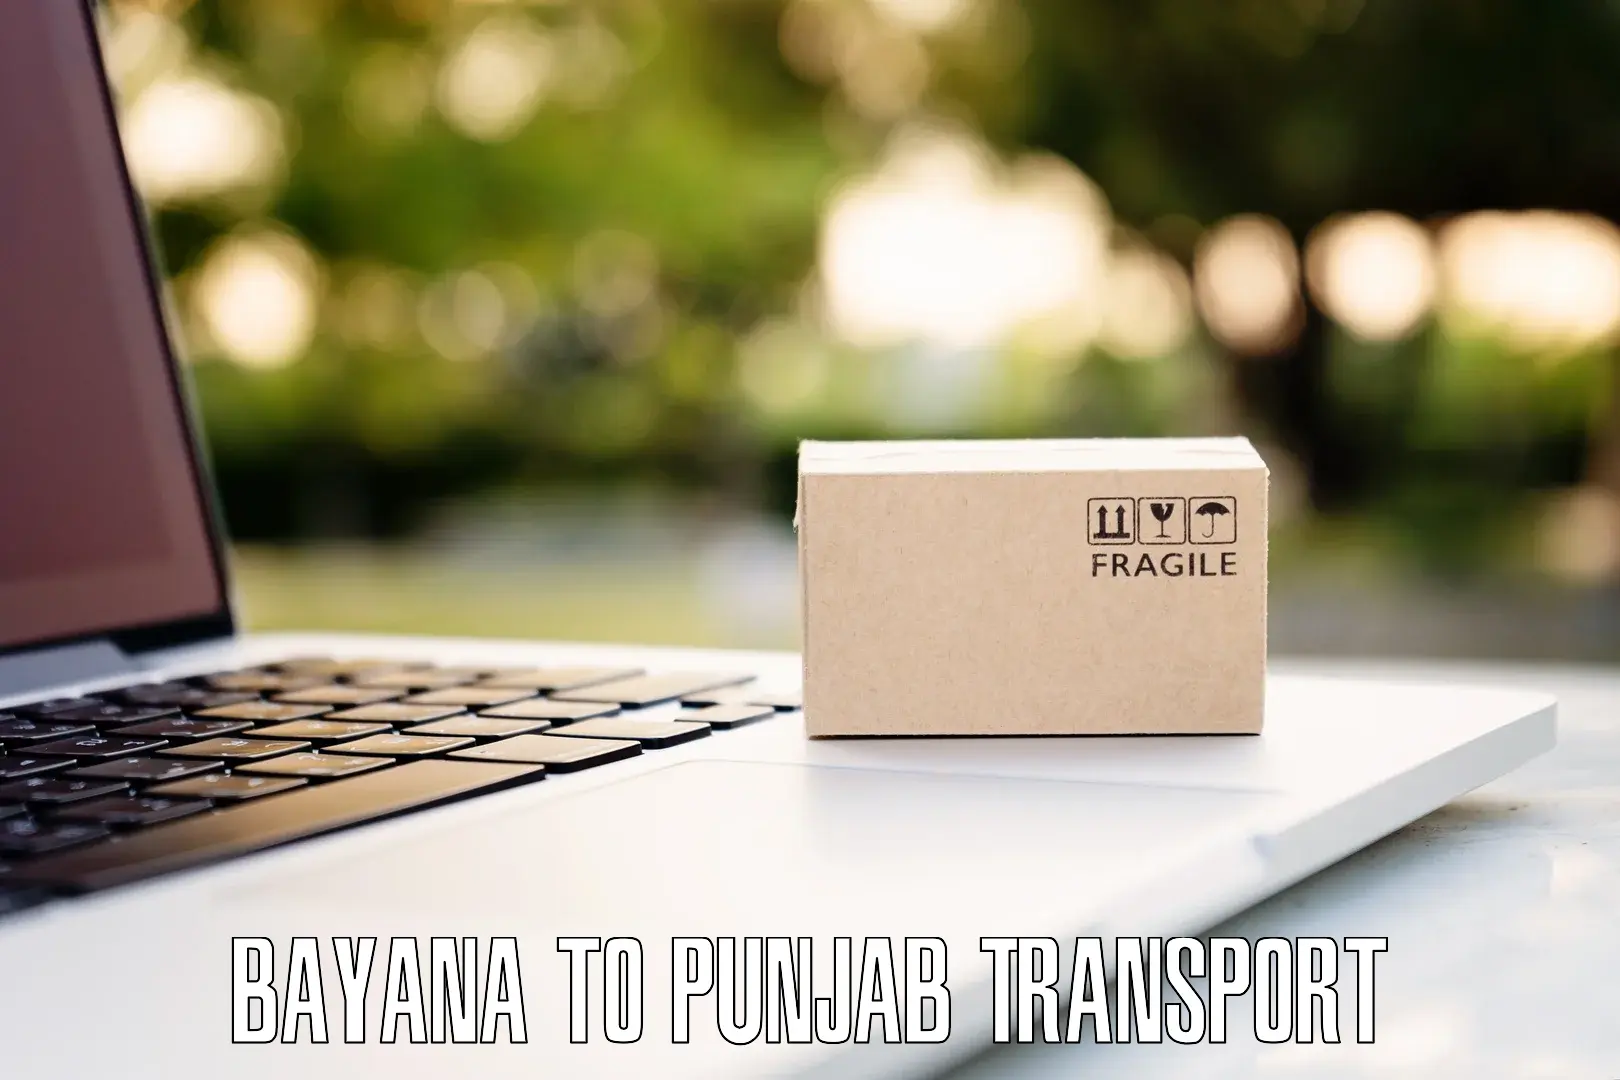 Furniture transport service Bayana to Patti Tarn Tara